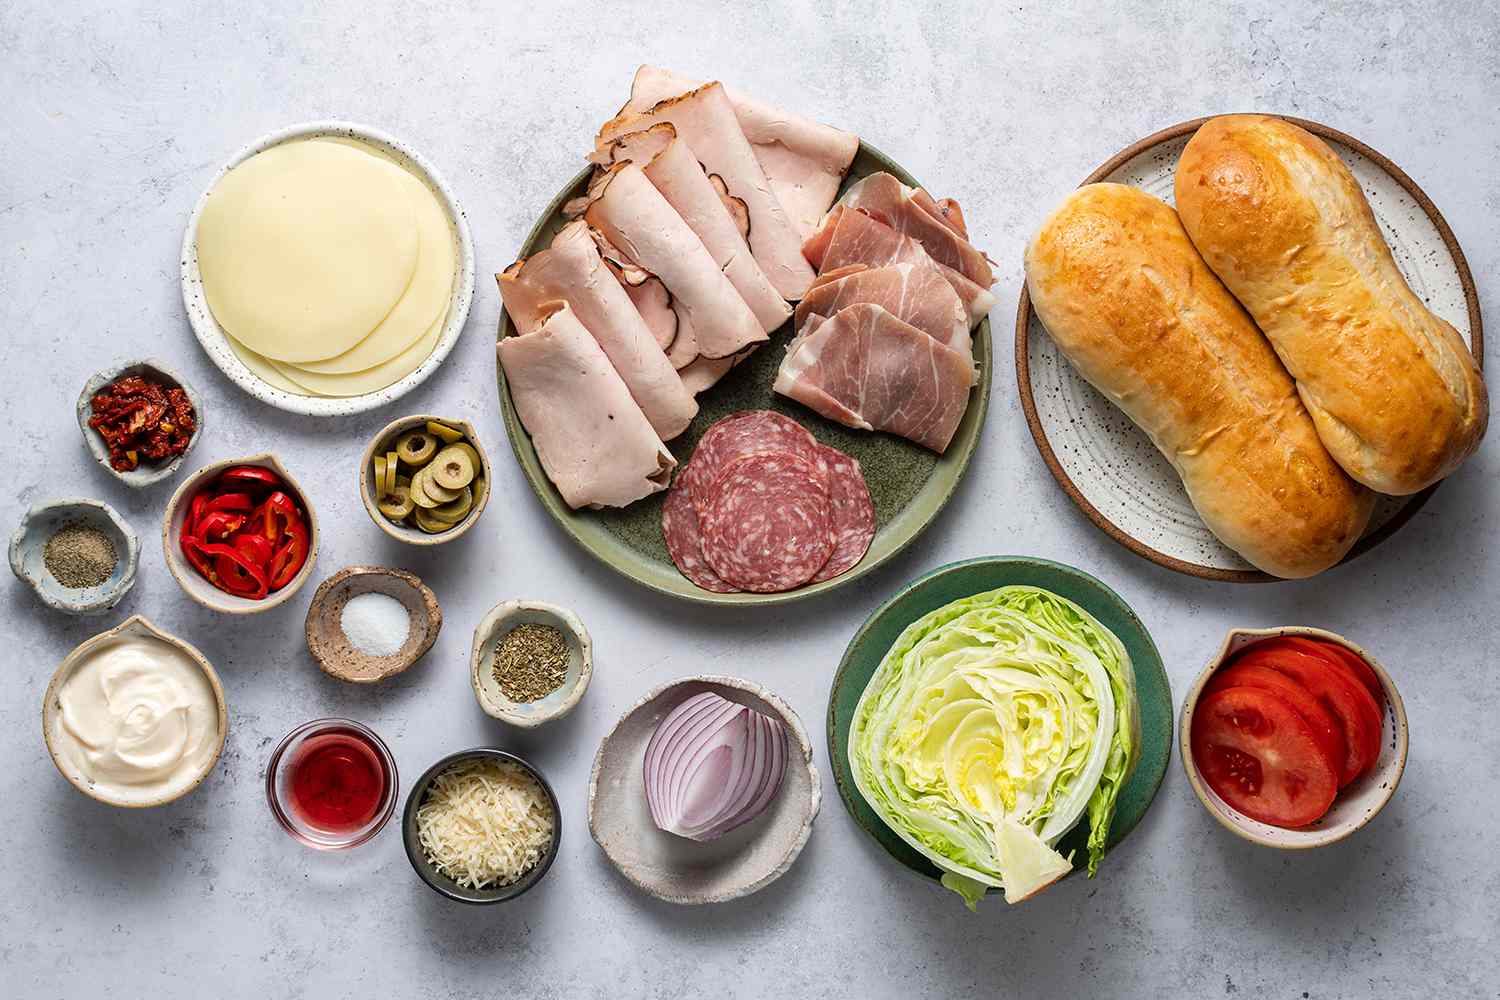 Ingredients to make grinder sandwiches